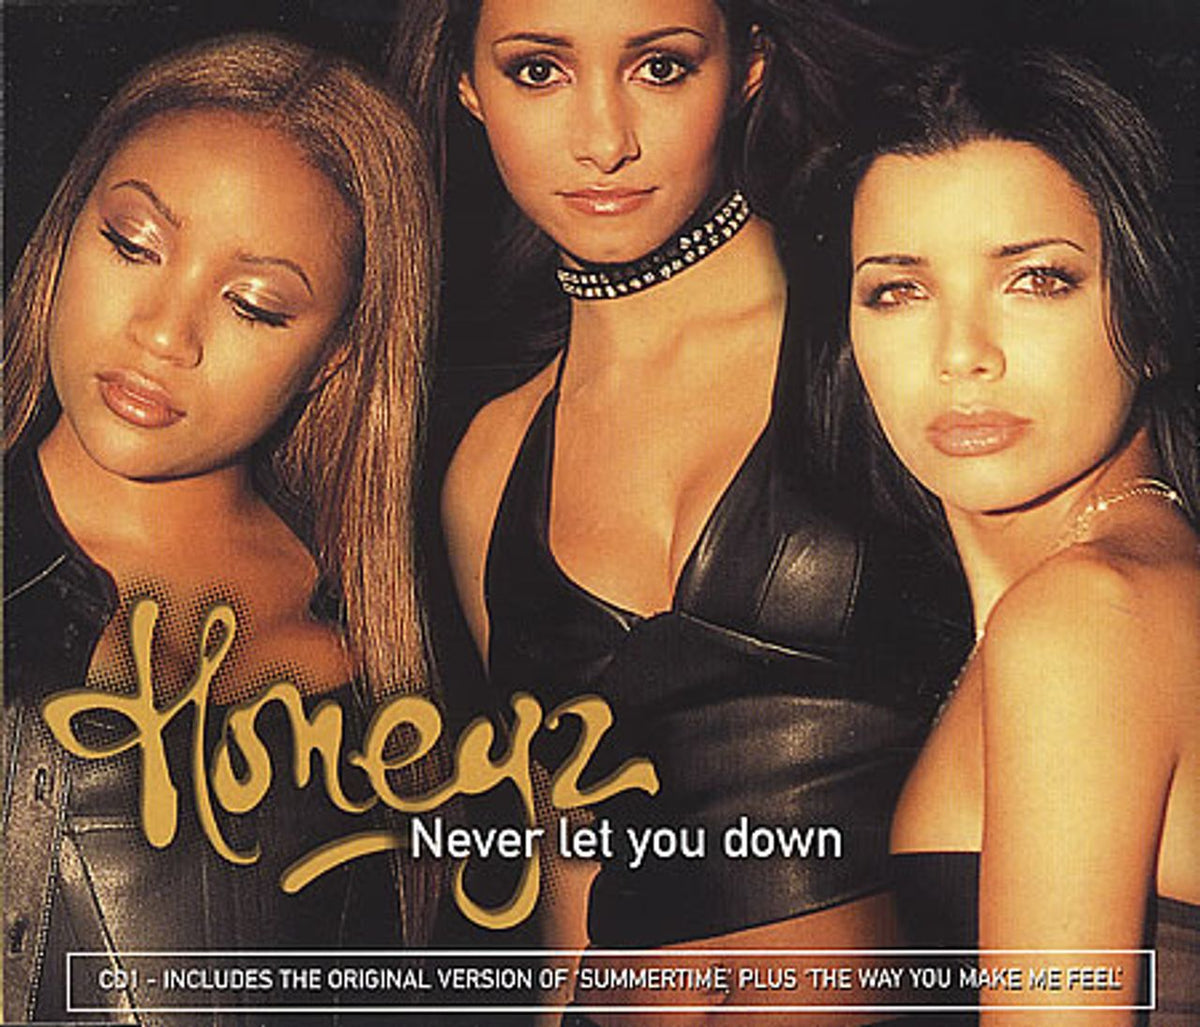 Honeyz Never Let You Down UK CD single — RareVinyl.com